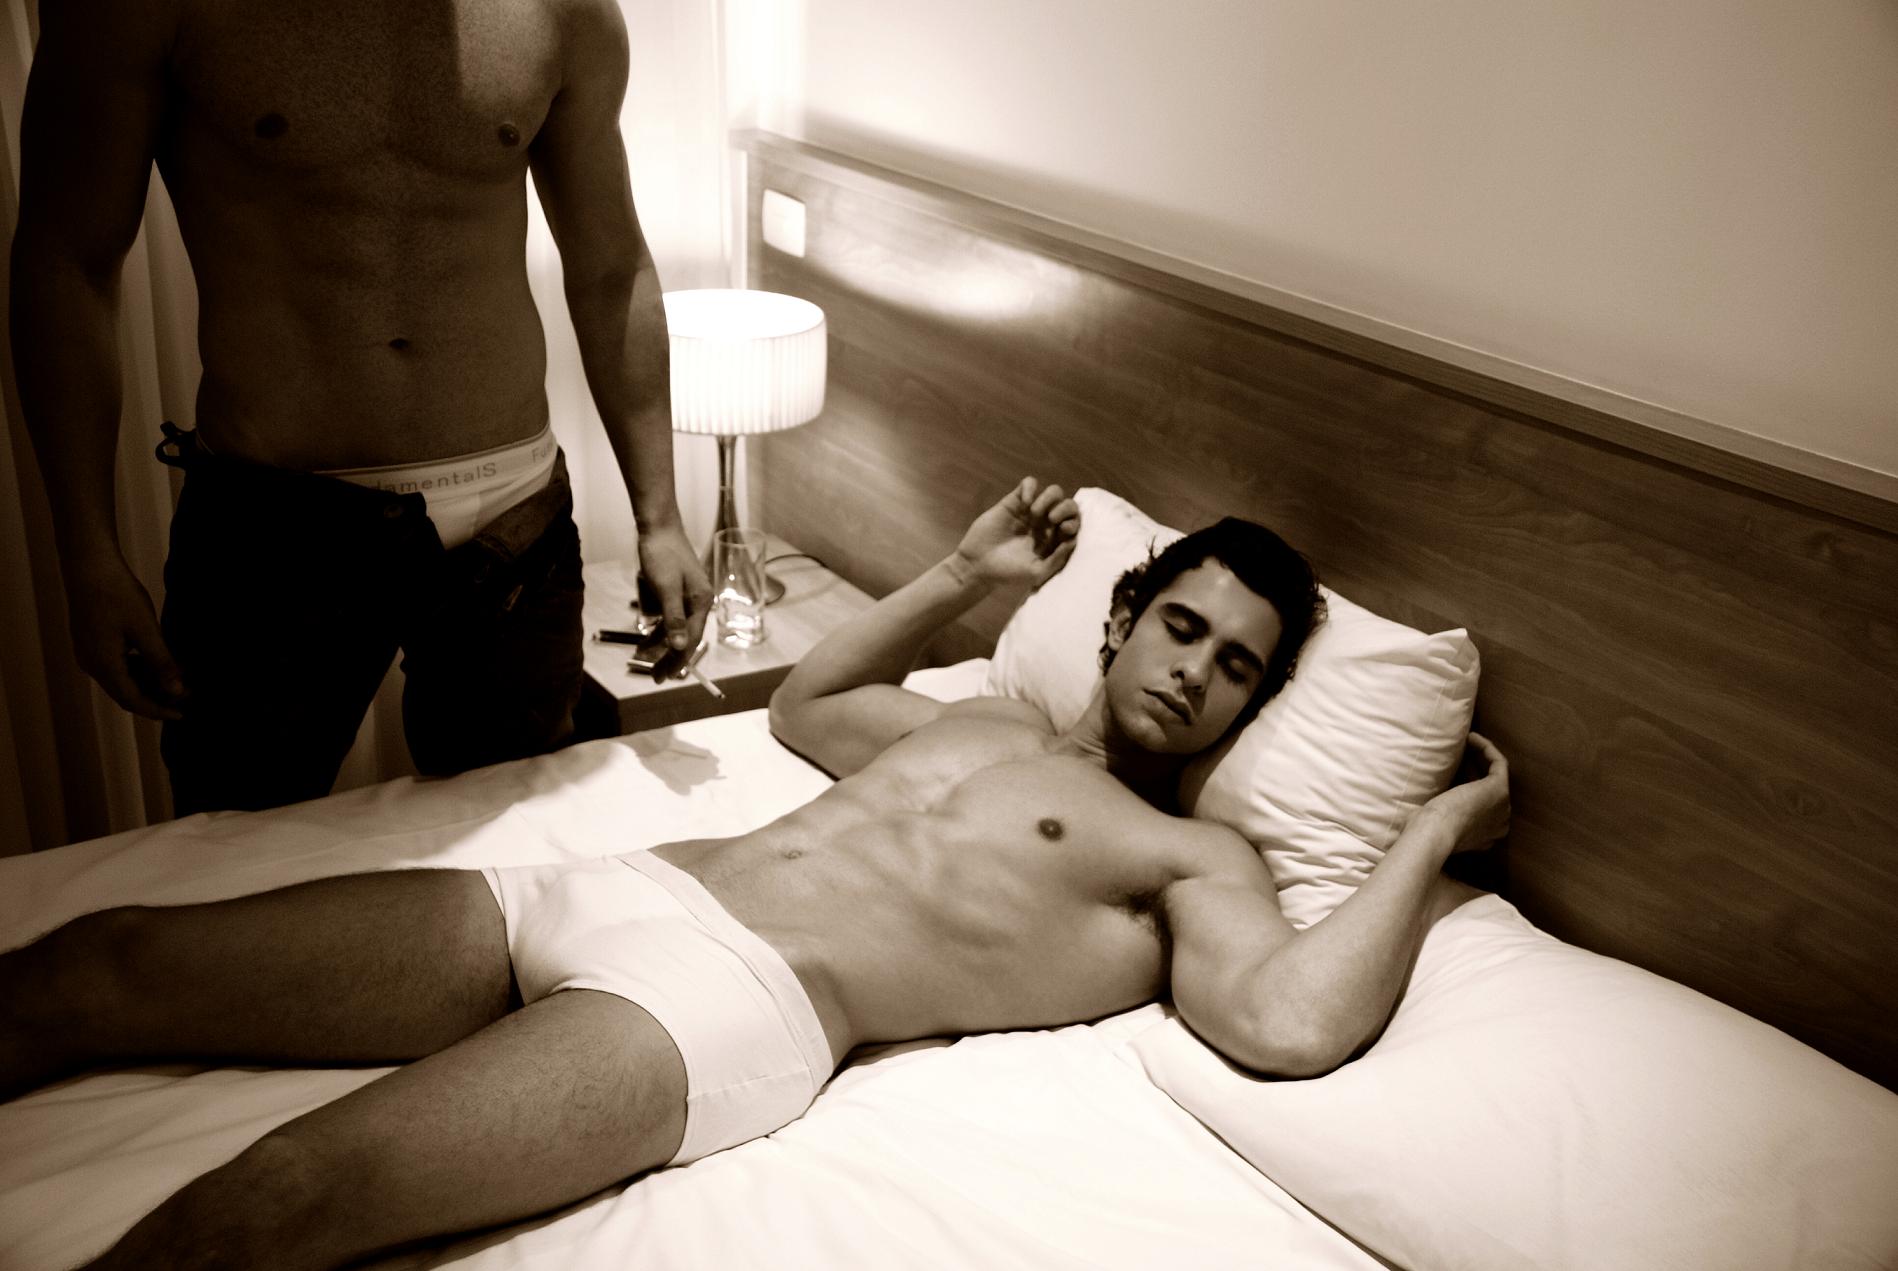 мужские фото в постели